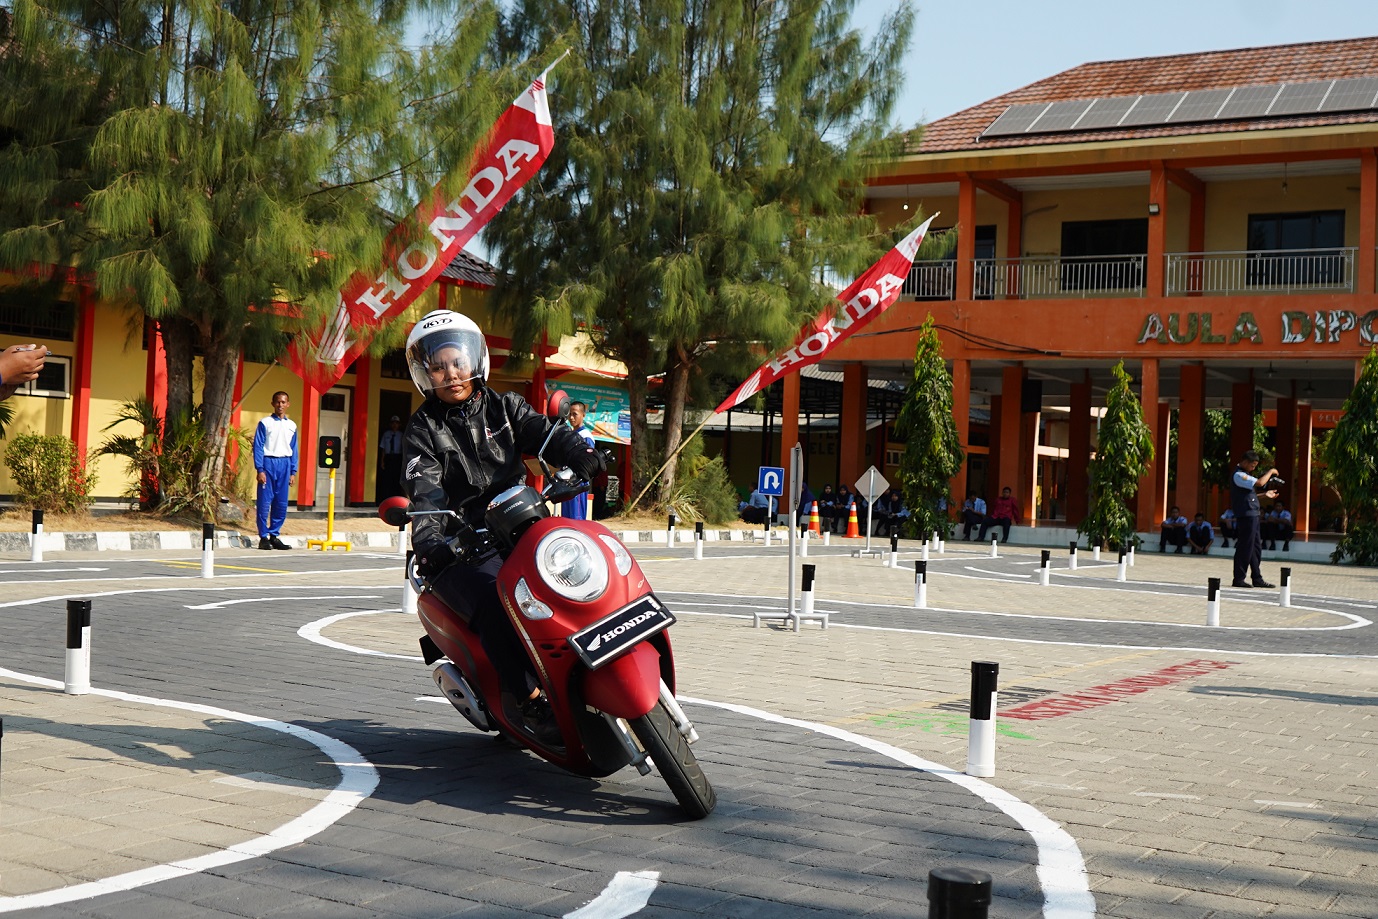 Sambut Hari Lalu Lintas Bhayangkara, Yayasan AHM Siapkan Duta Safety Riding Milenial dari Jawa Tengah